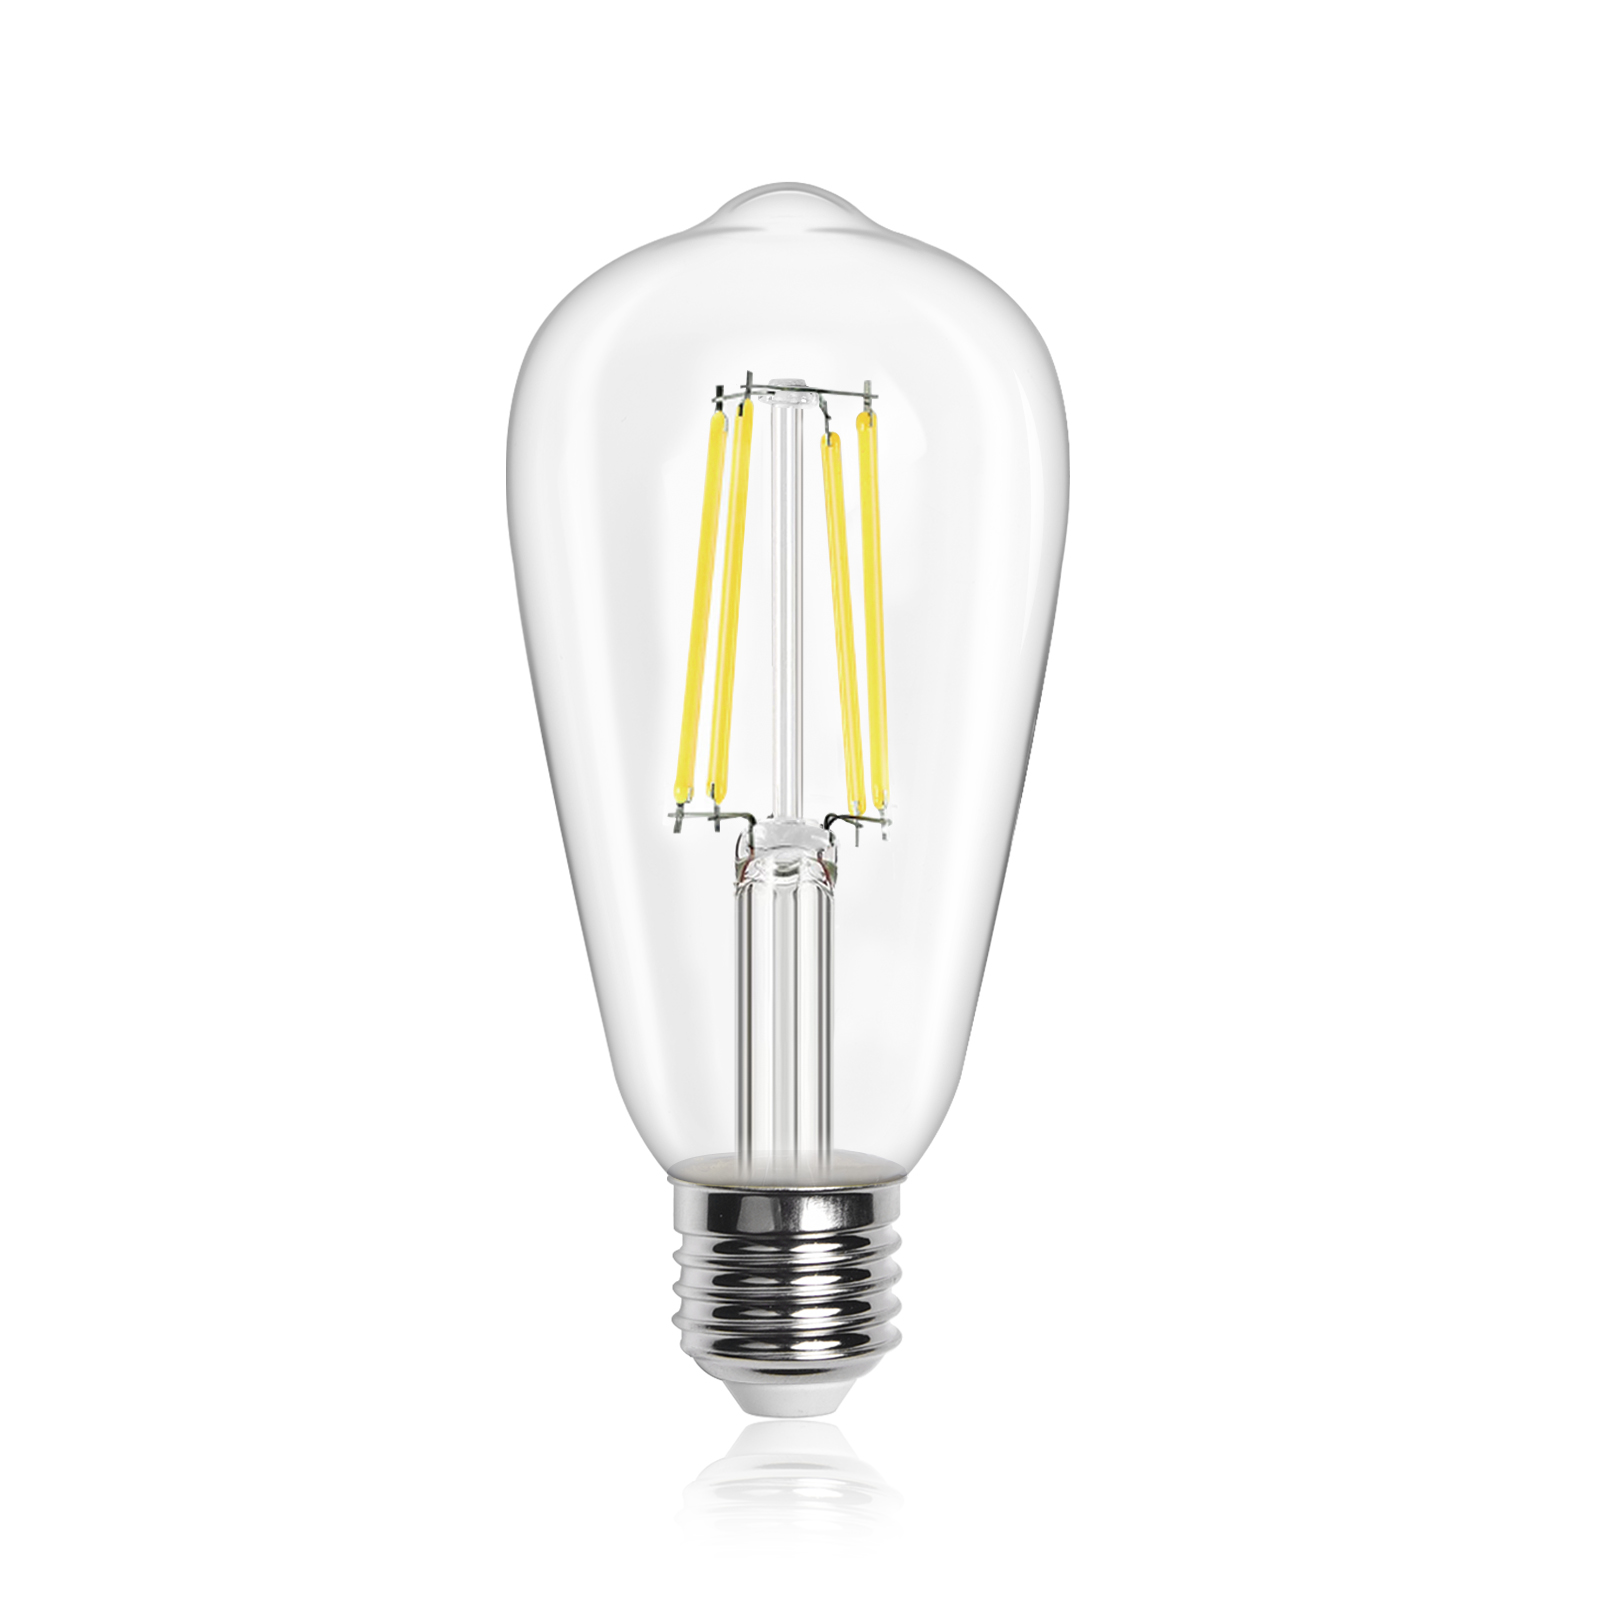 6W ST64 E27 LED Vintage Light Bulb